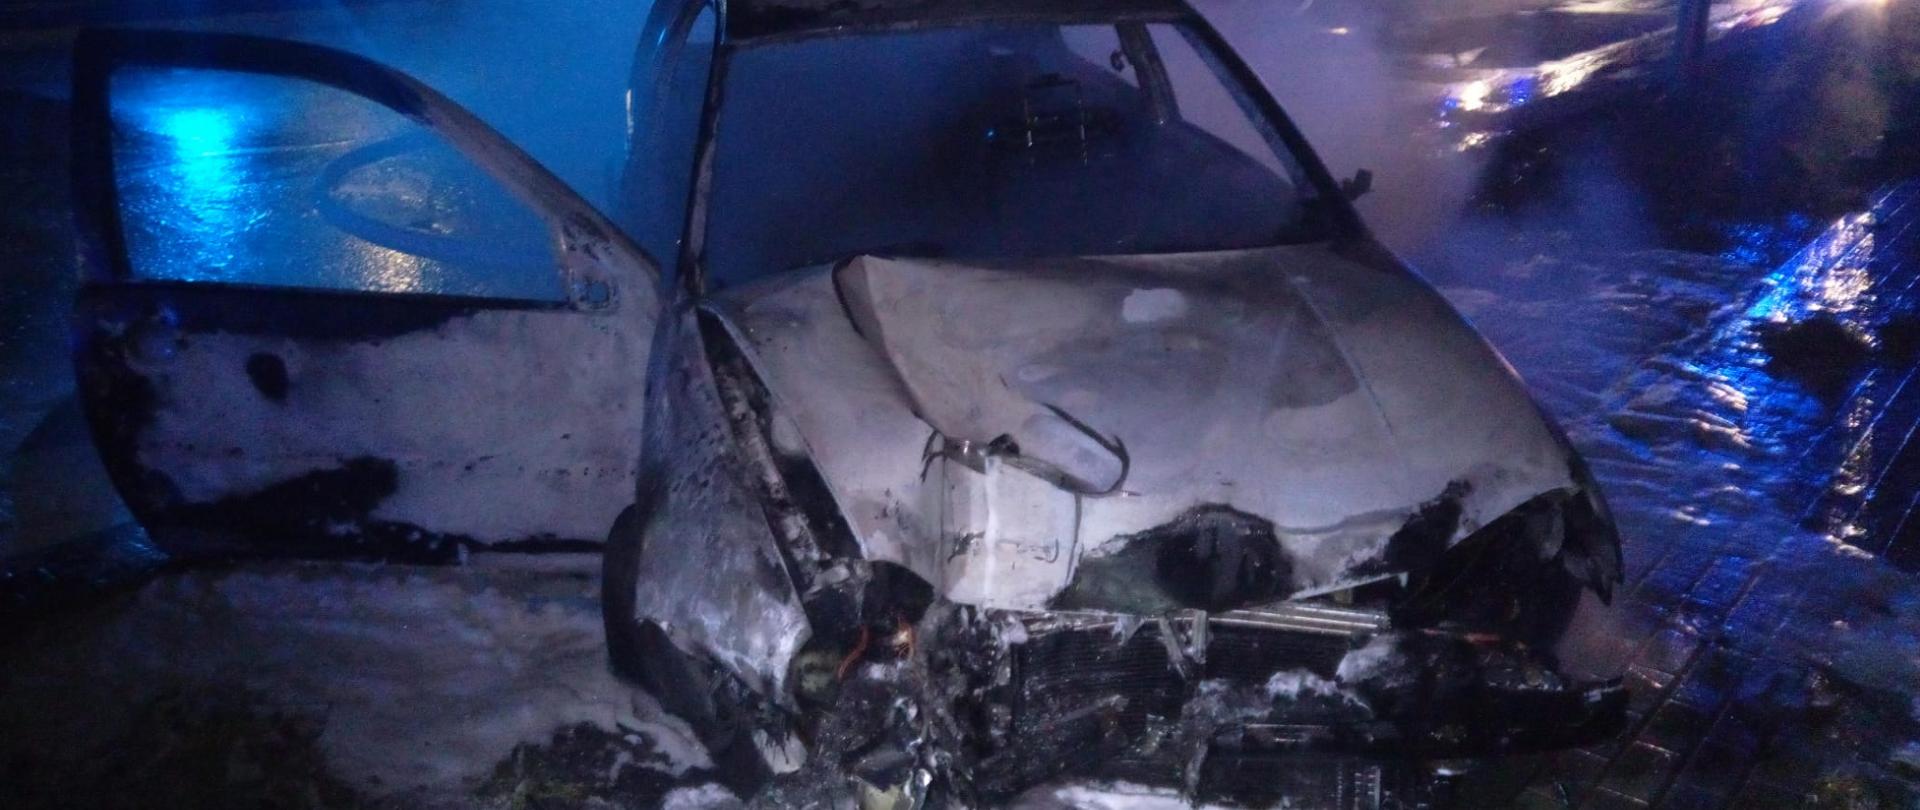 Zdjęcie przedstawia spalony samochód osobowy. Przedni pas zniszczony w wyniku uderzenia w słup latarni ulicznej. Wokół rozlana piana gaśnicza.